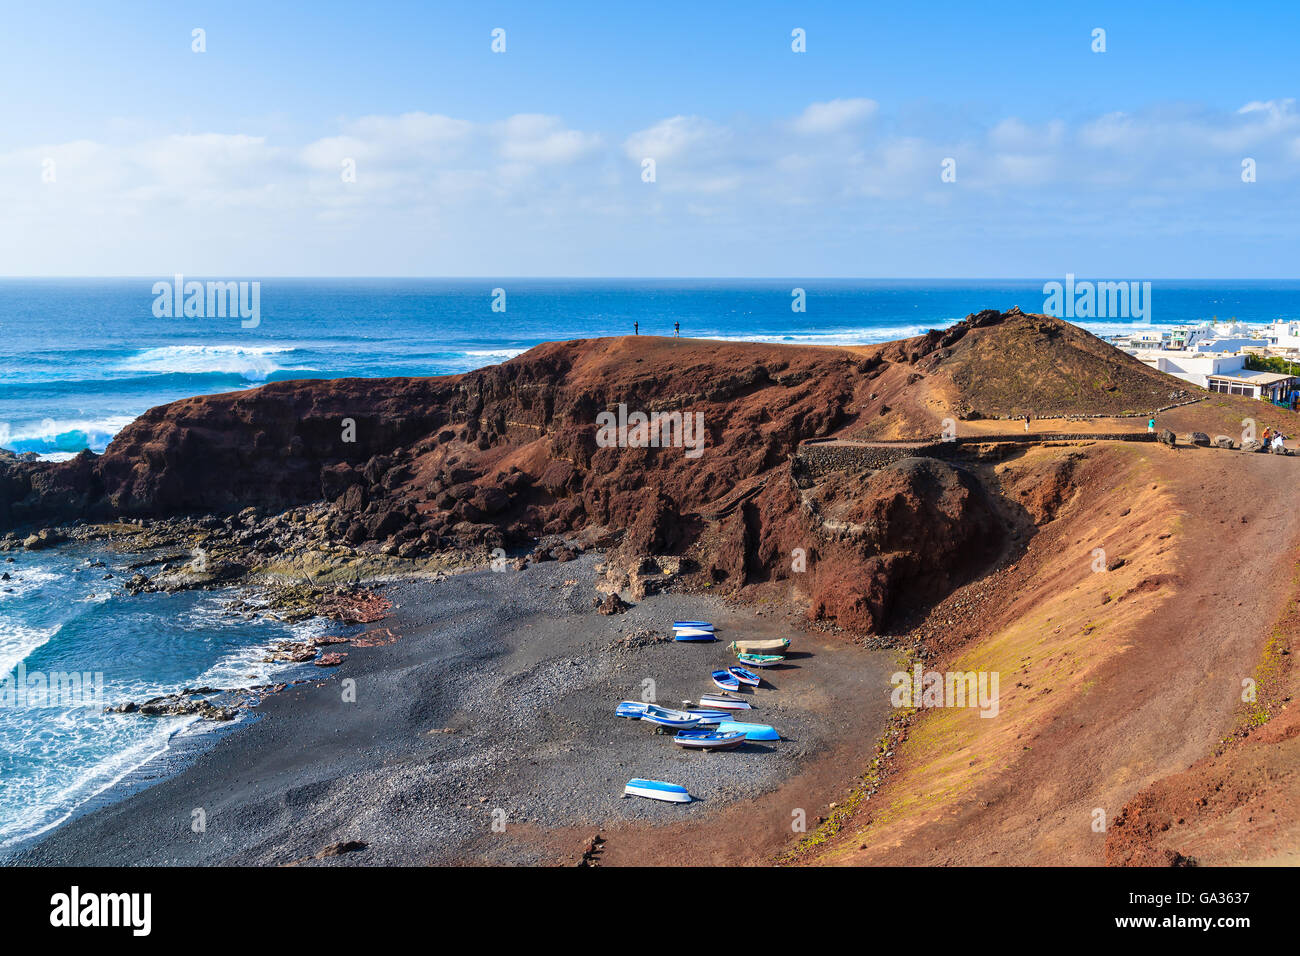 Bateaux de pêche sur la plage, dans le village d'El Golfo, Lanzarote, îles Canaries, Espagne Banque D'Images